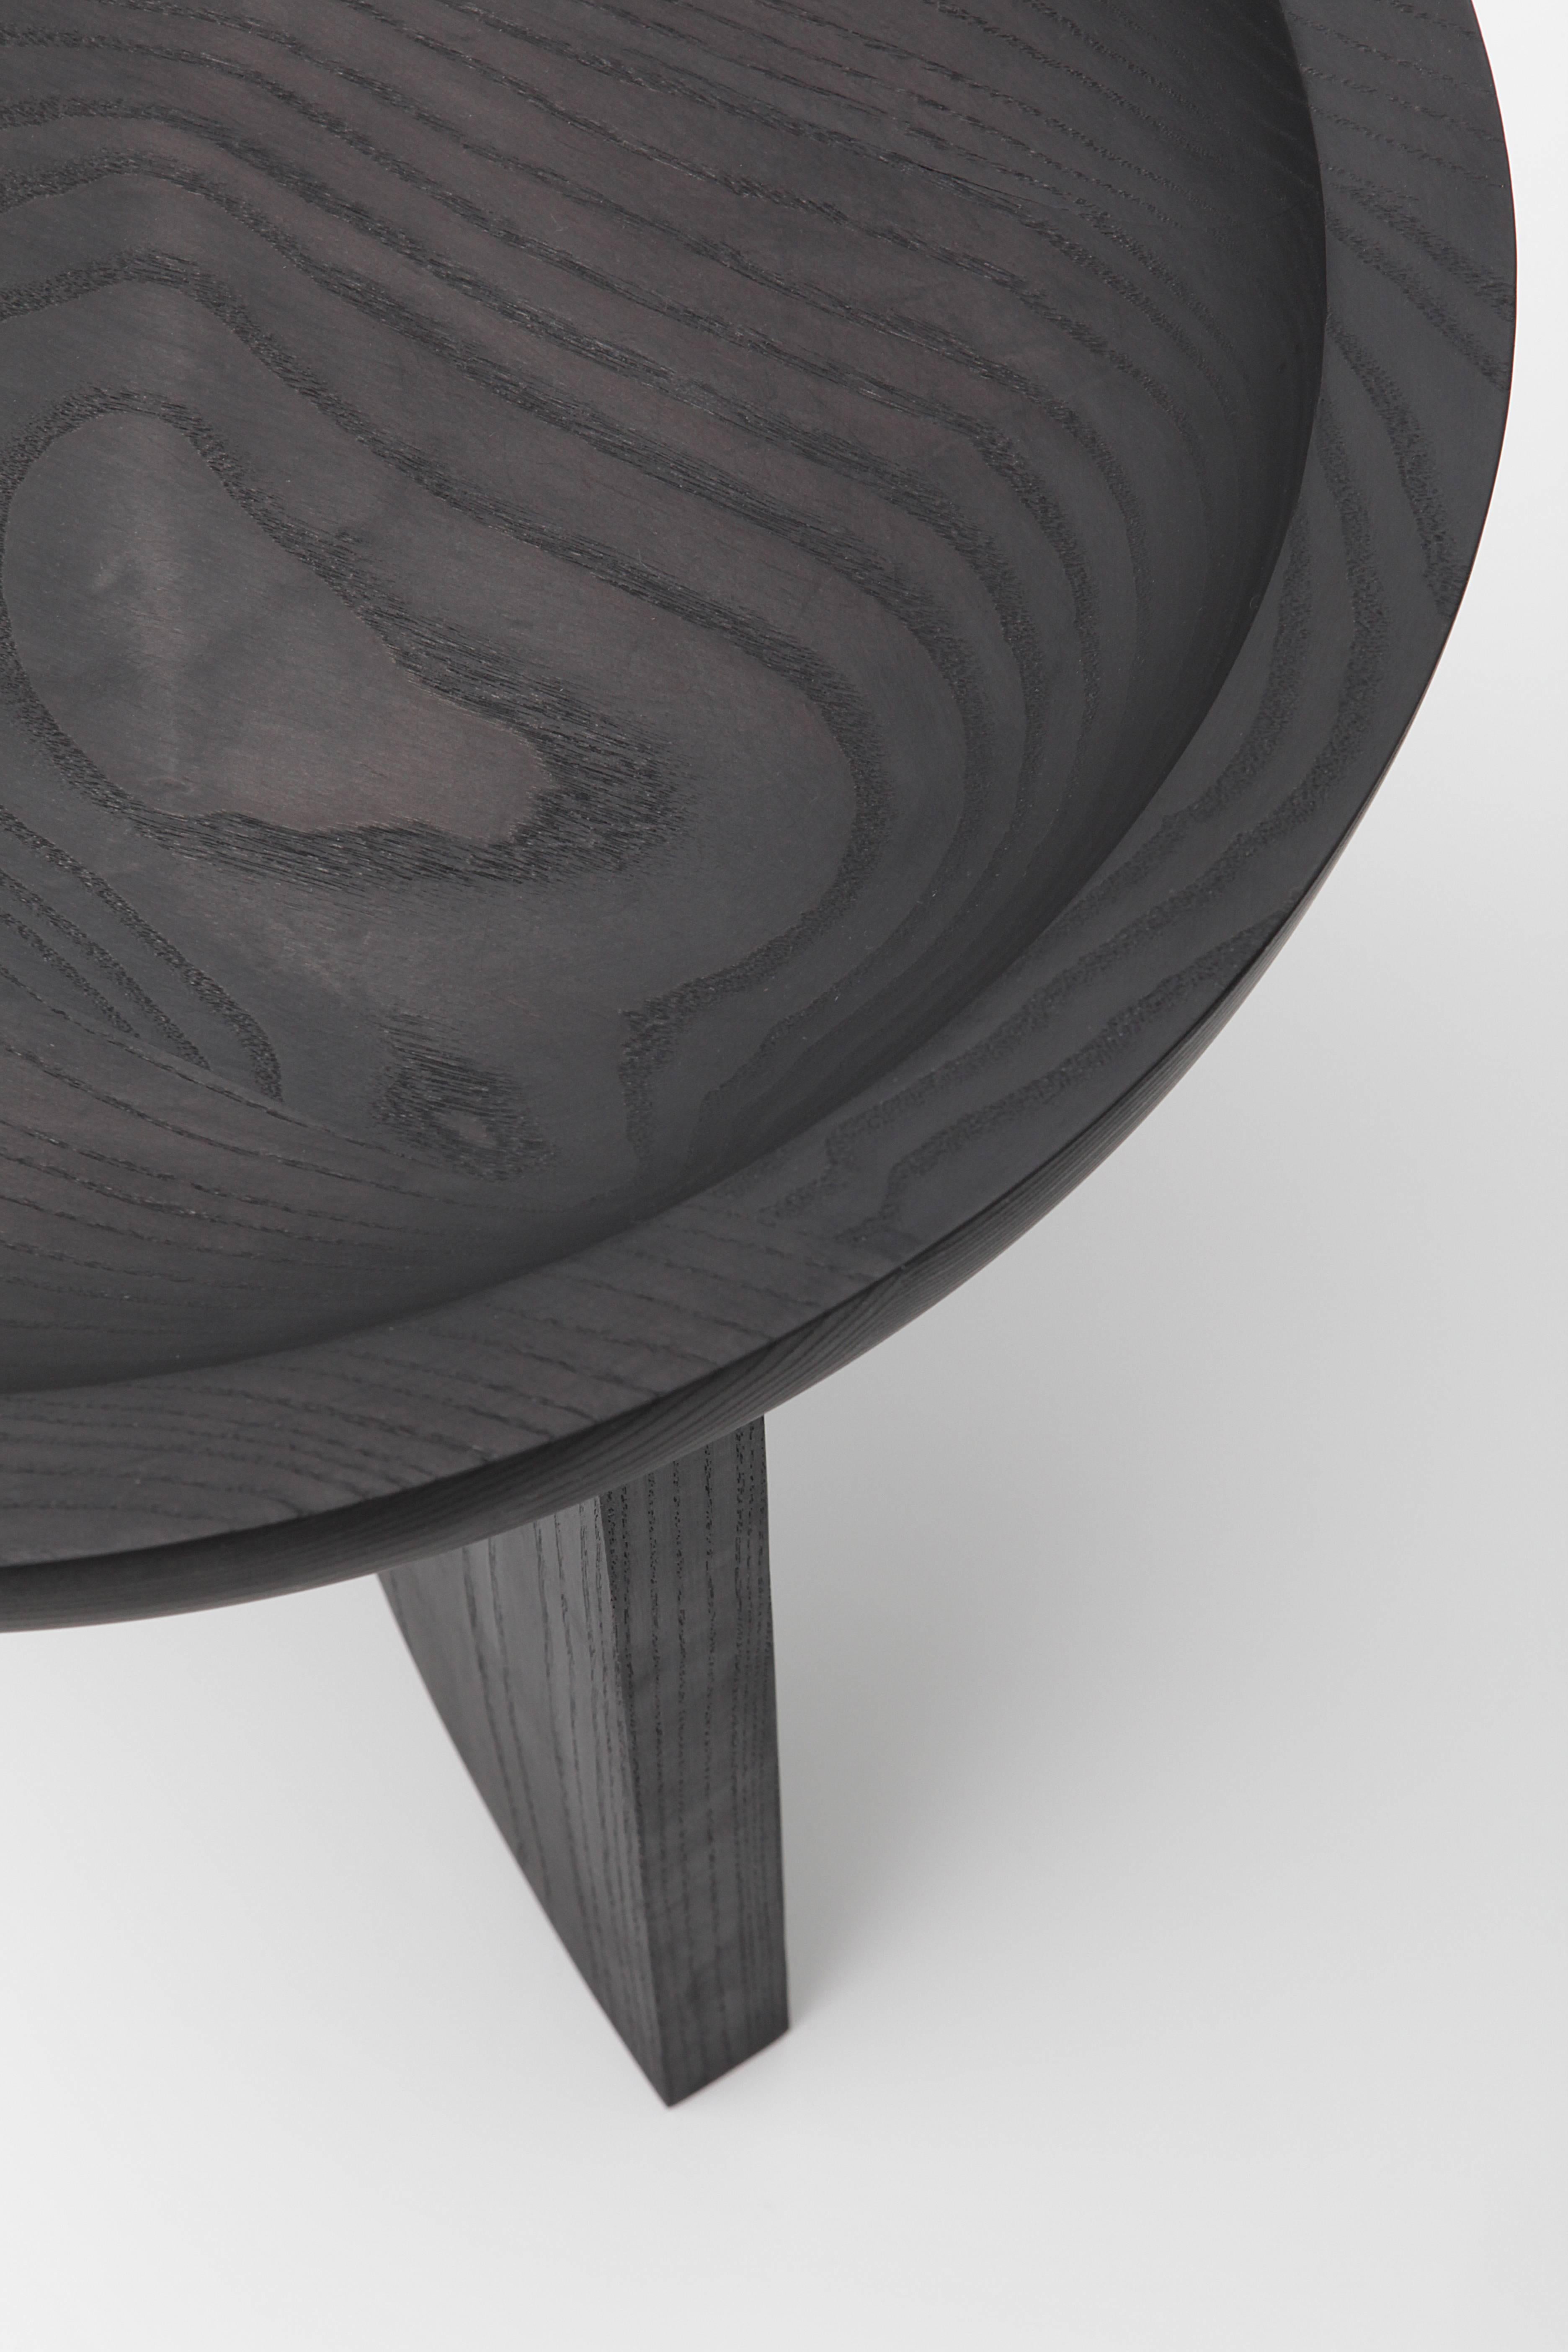 Moderne Table basse ou tabouret d'appoint sculptural contemporain en bois massif noir sculpté pour plat en vente